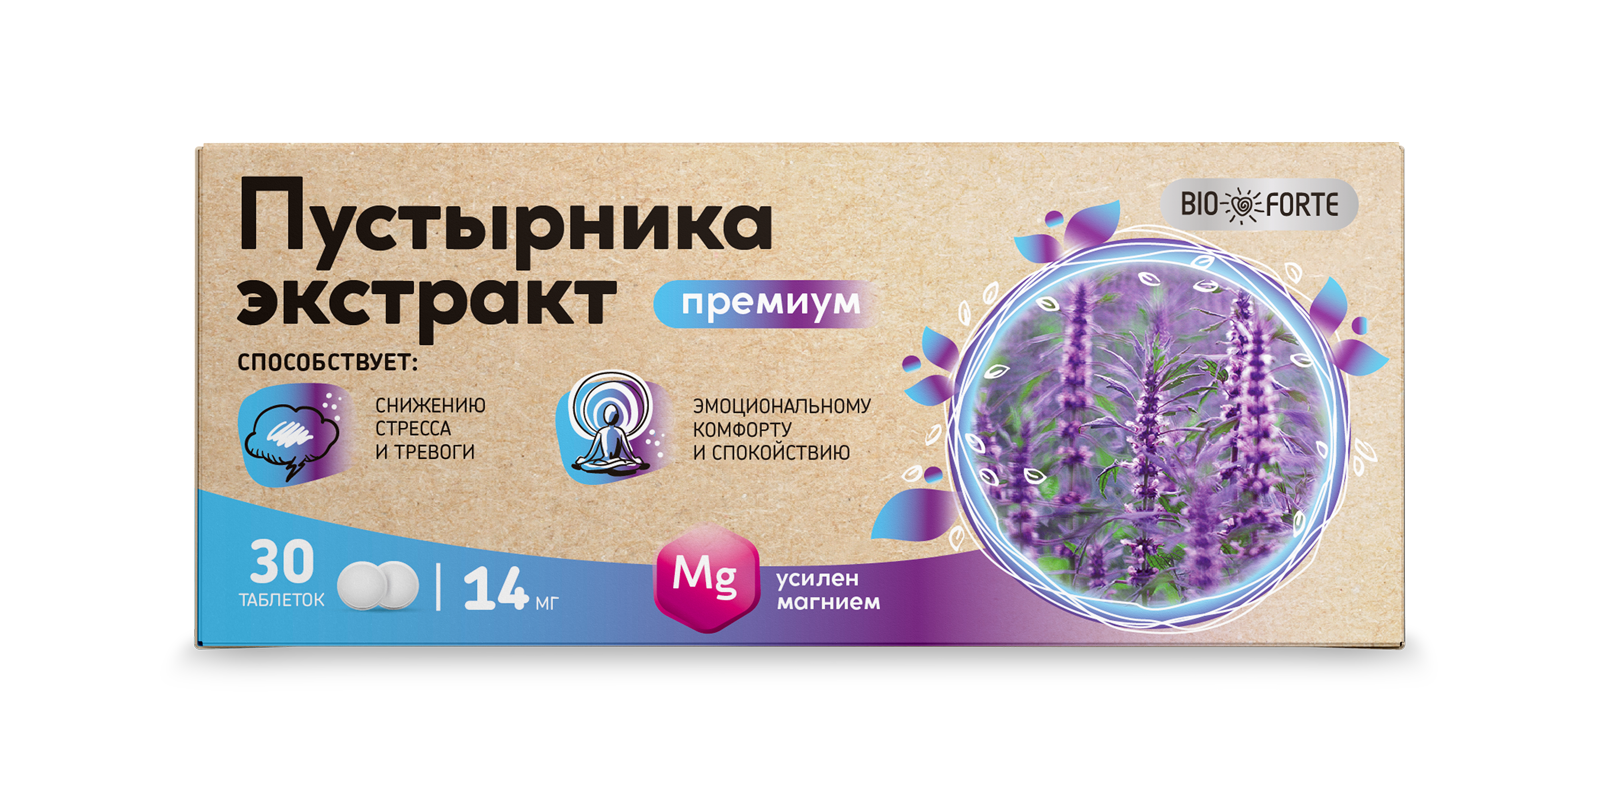 Пустырника экстракт Премиум BioForte, таблетки с магнием 0.45 г, 30 шт.